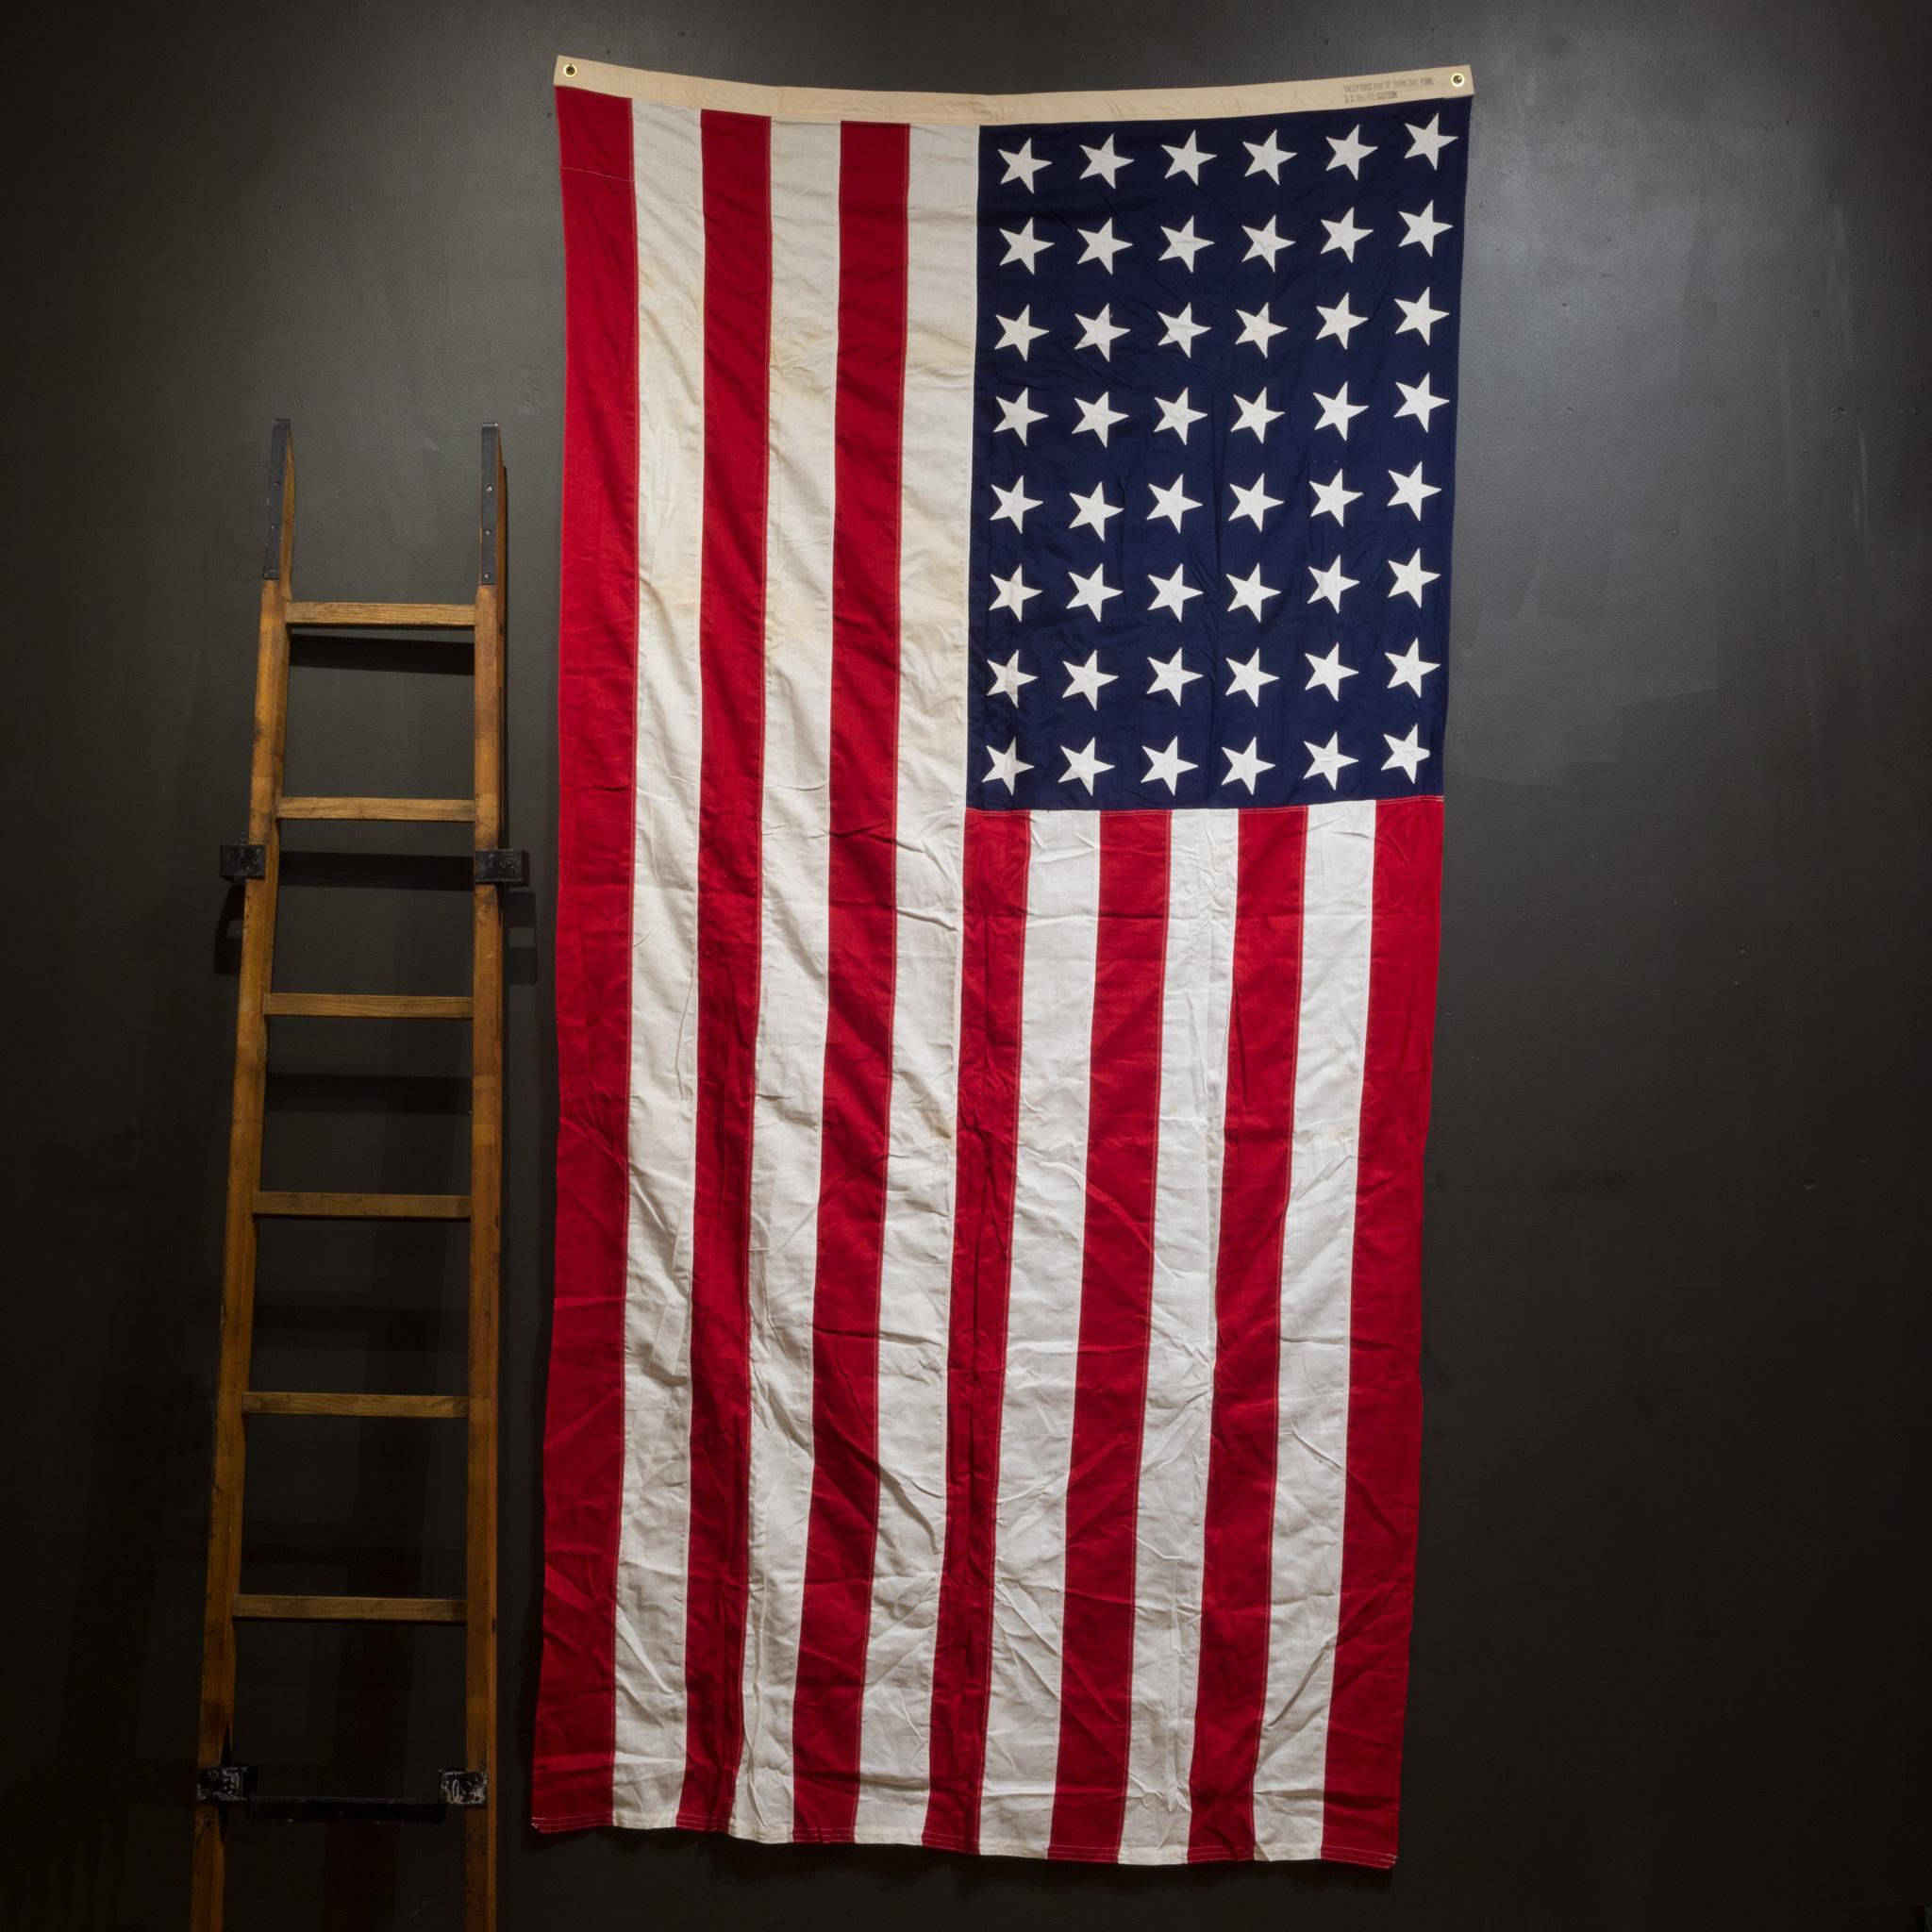 À propos de

Il s'agit d'un drapeau américain monumental original fabriqué par Valley Forge Co. avec 48 étoiles et rayures et des œillets en laiton.

Créateur Valley Forge Co.
Date de fabrication C.1940-1950.
Matériaux et techniques : coton,